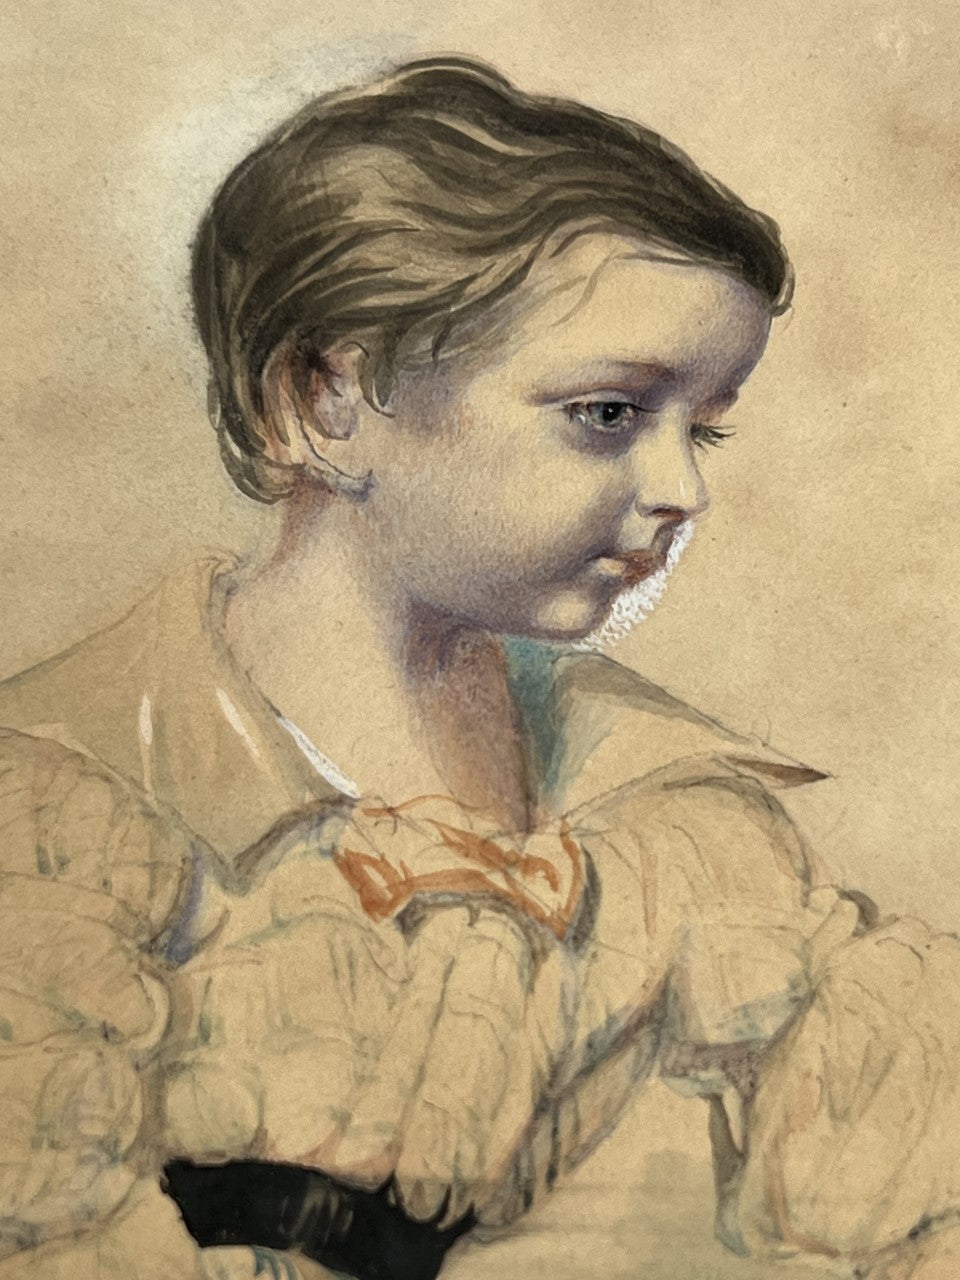 Ritratto di un bambino di Colesworthy Grant, Calcutta 1843 